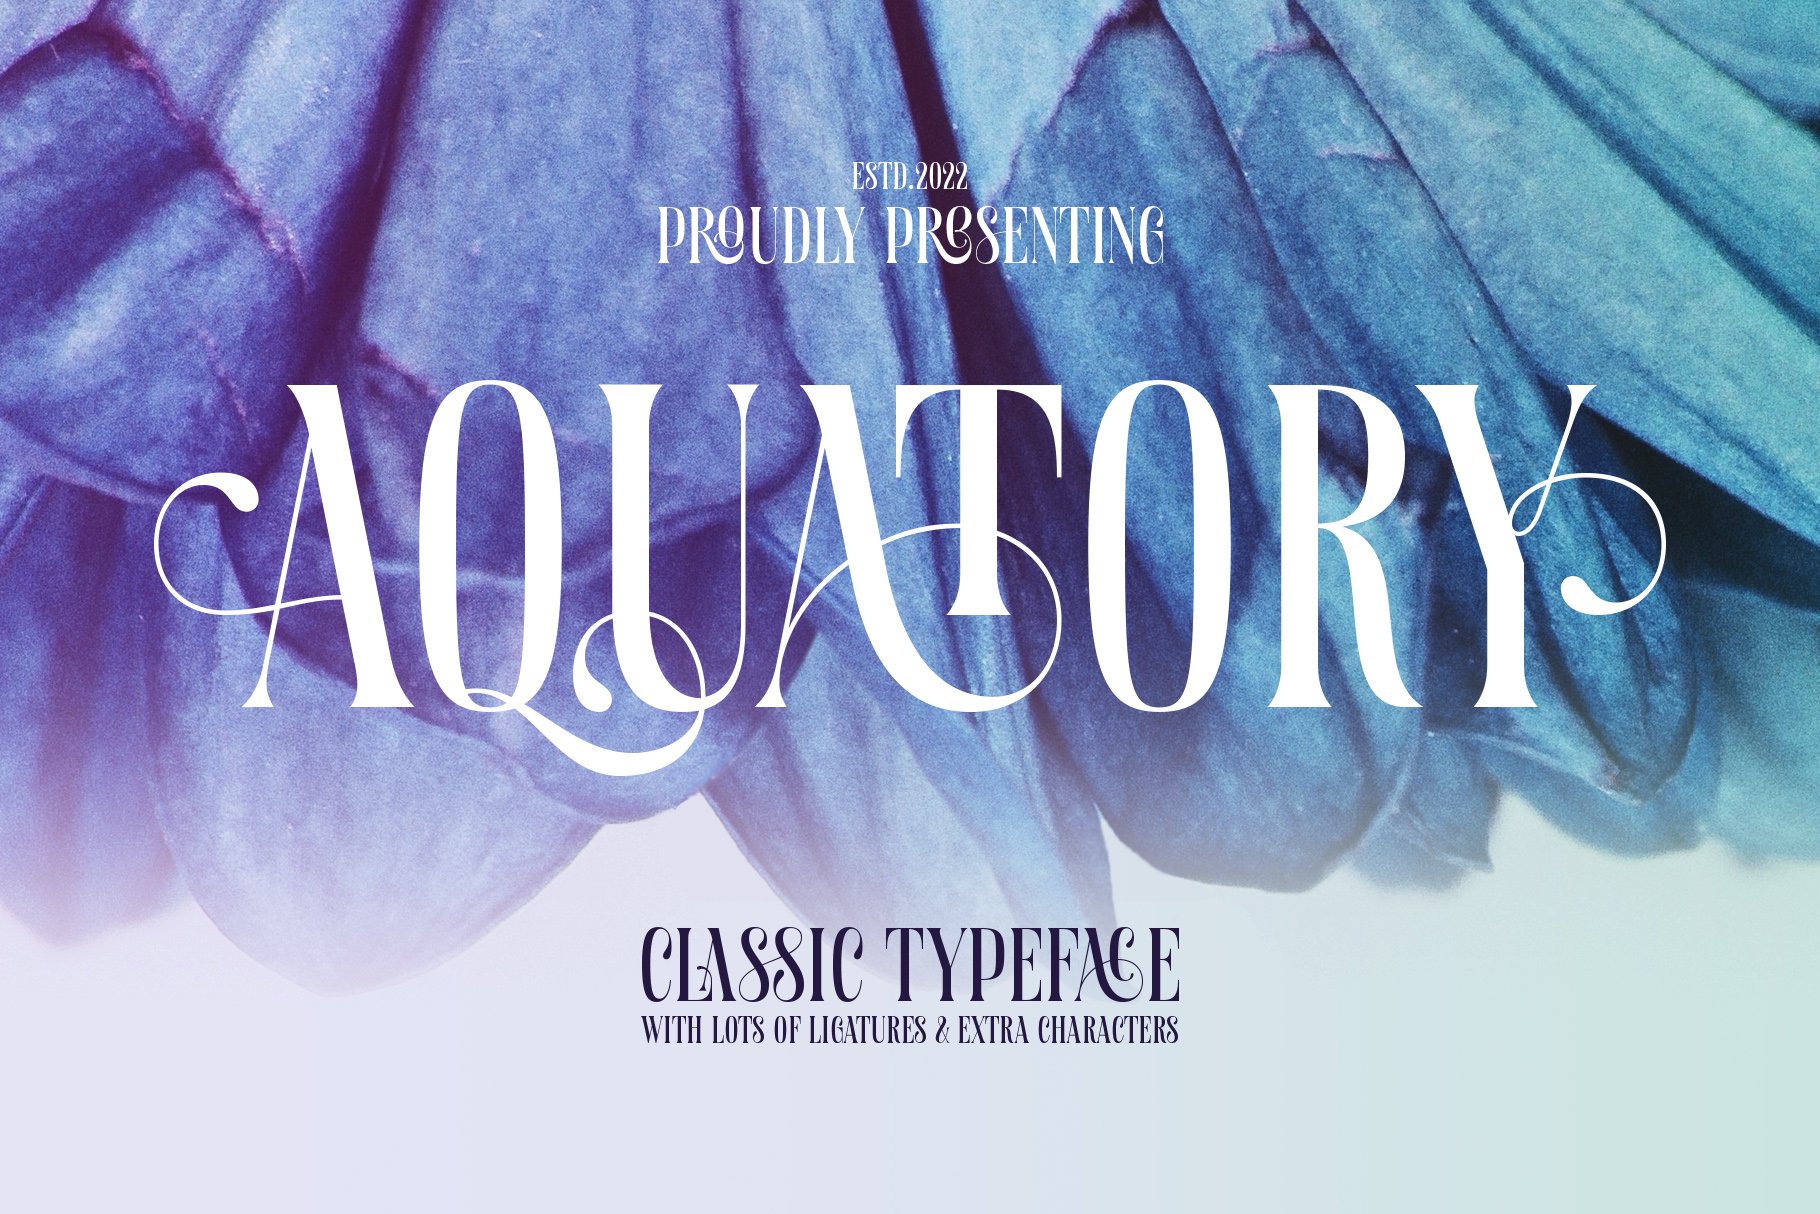 Aquatory - Classic Font cover image.